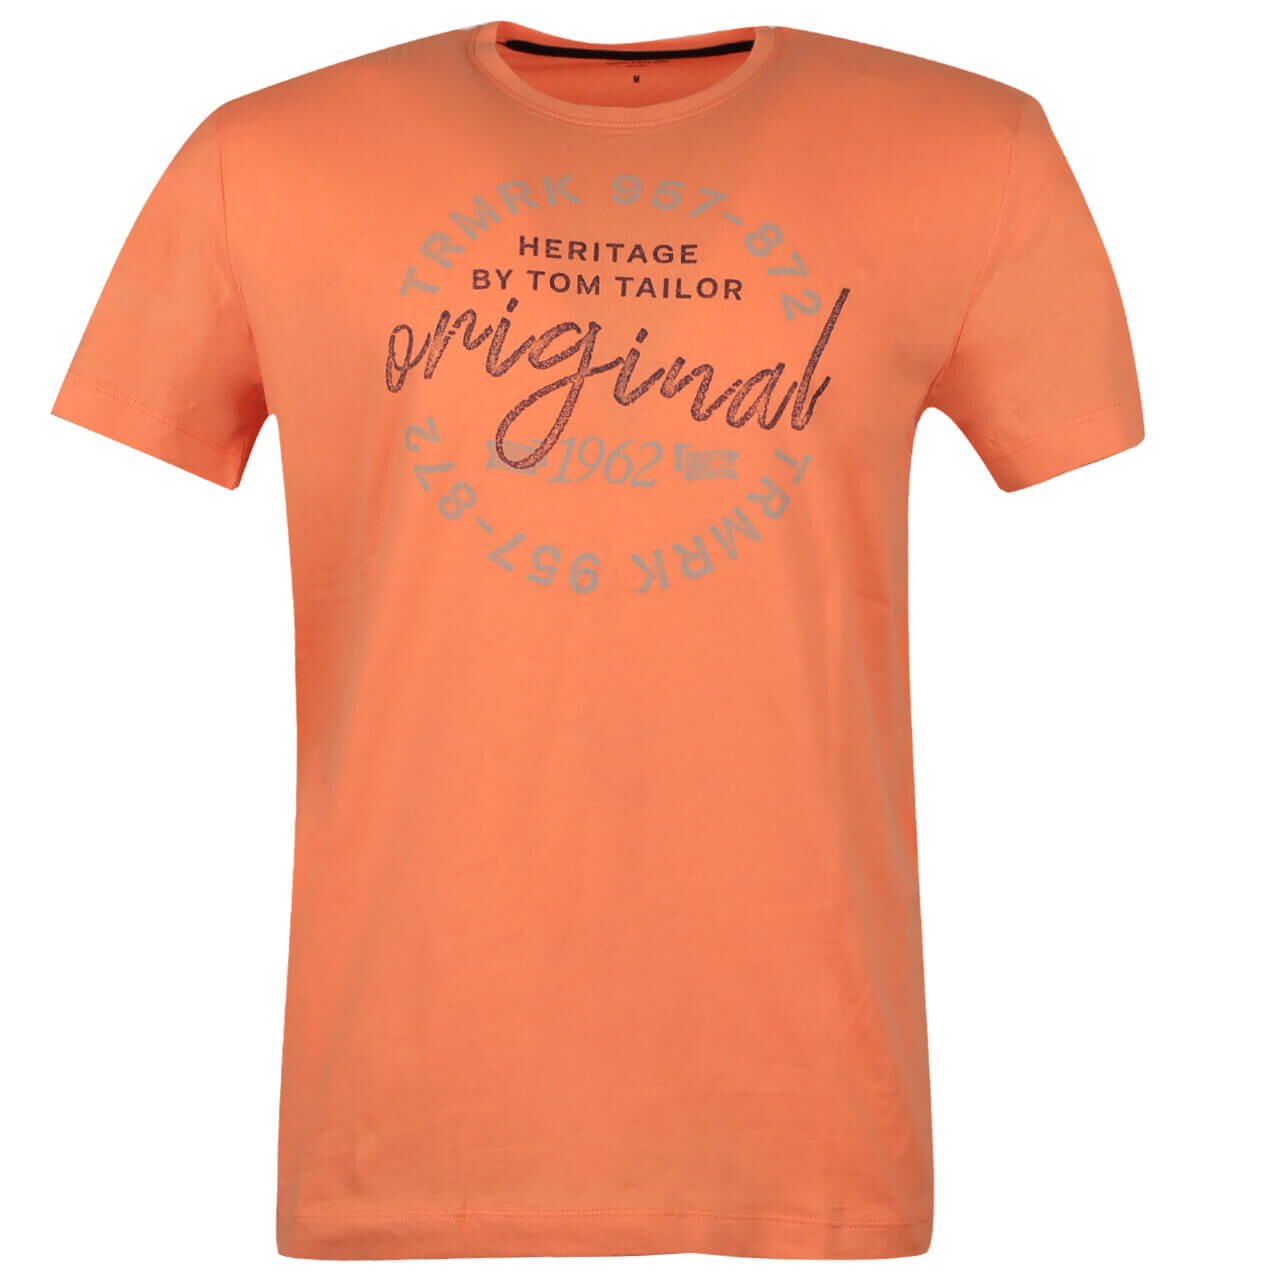 Tom Tailor T-Shirt für Herren in Orange mit Print, FarbNr.: 28420